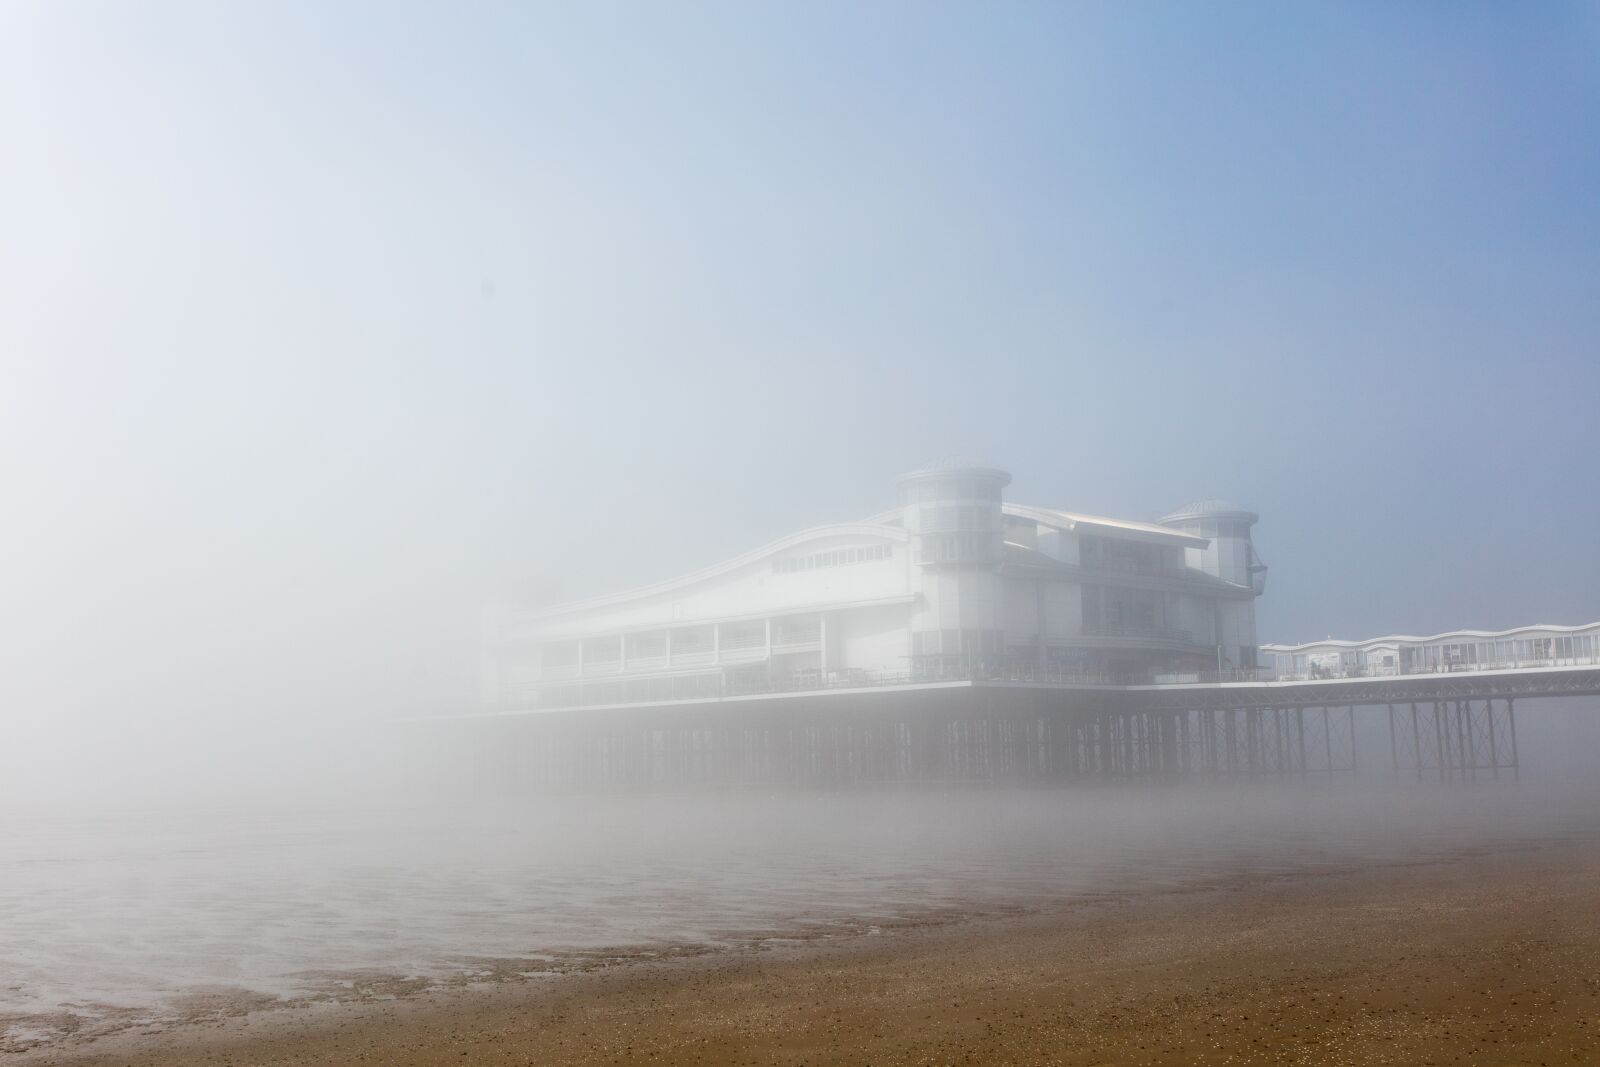 Canon EOS 5DS R sample photo. Beach, pier, fog photography